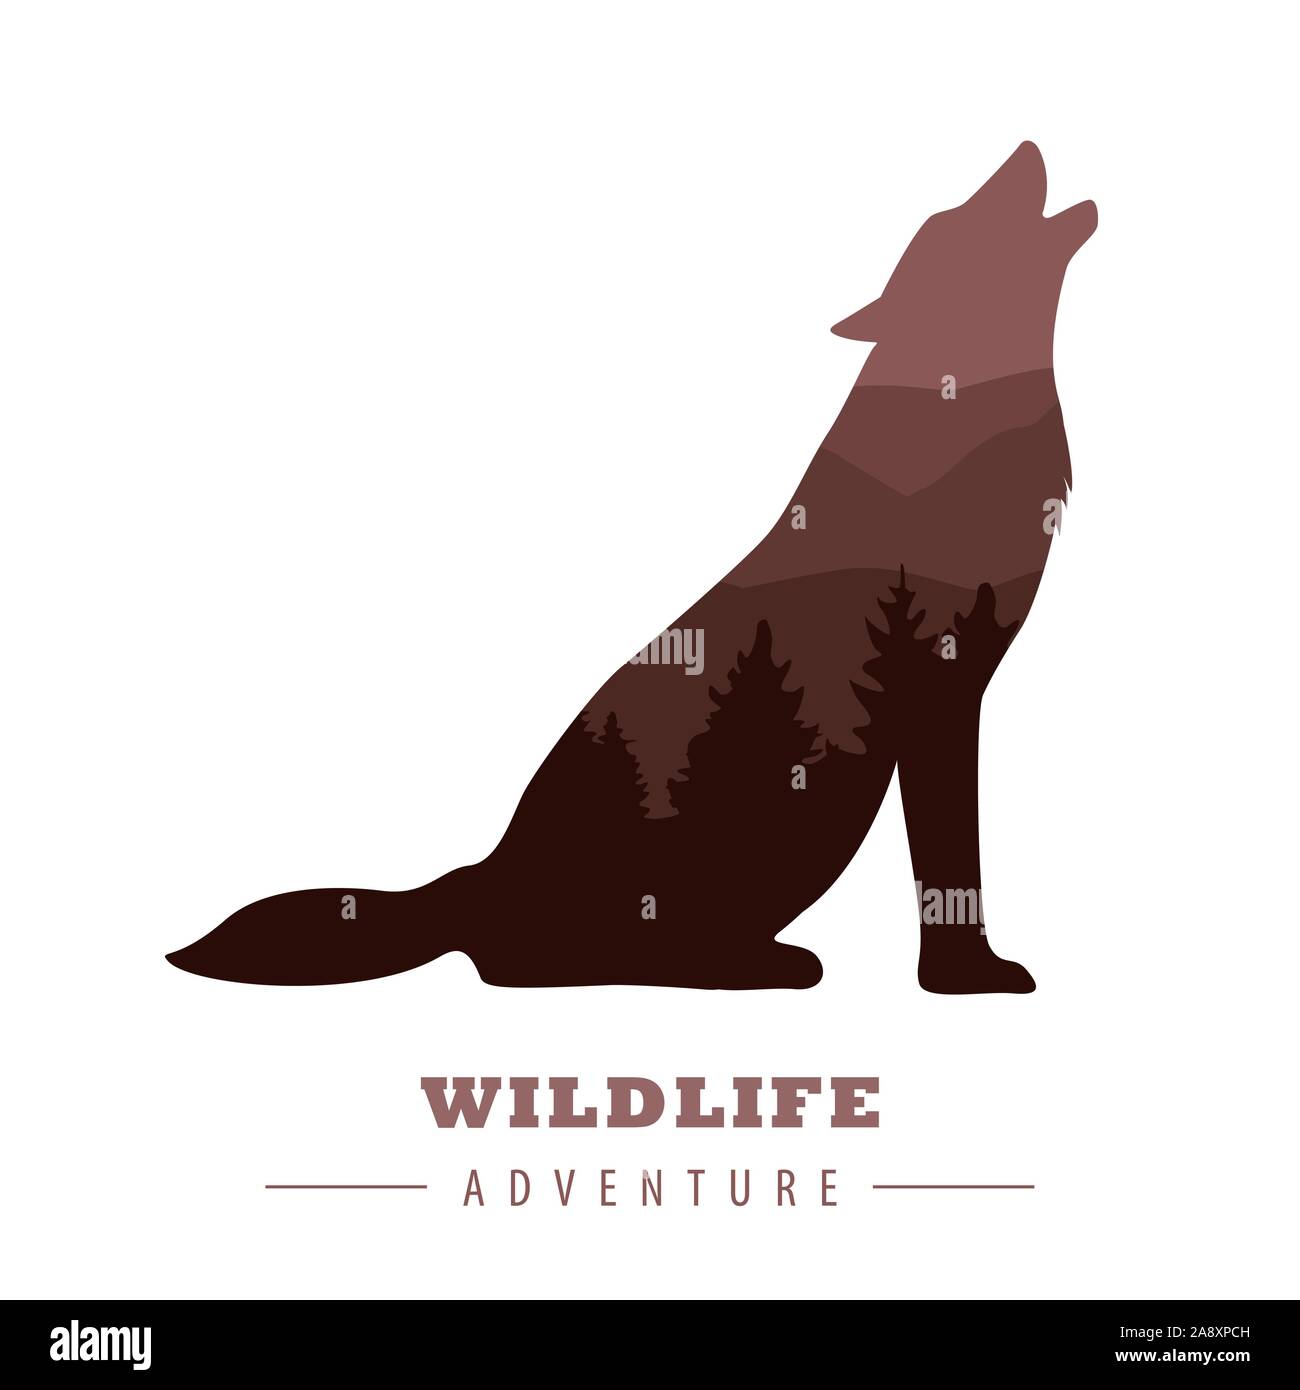 Wildlife Abenteuer wolf Silhouette mit Wald landschaft Vektor-illustration EPS 10. Stock Vektor